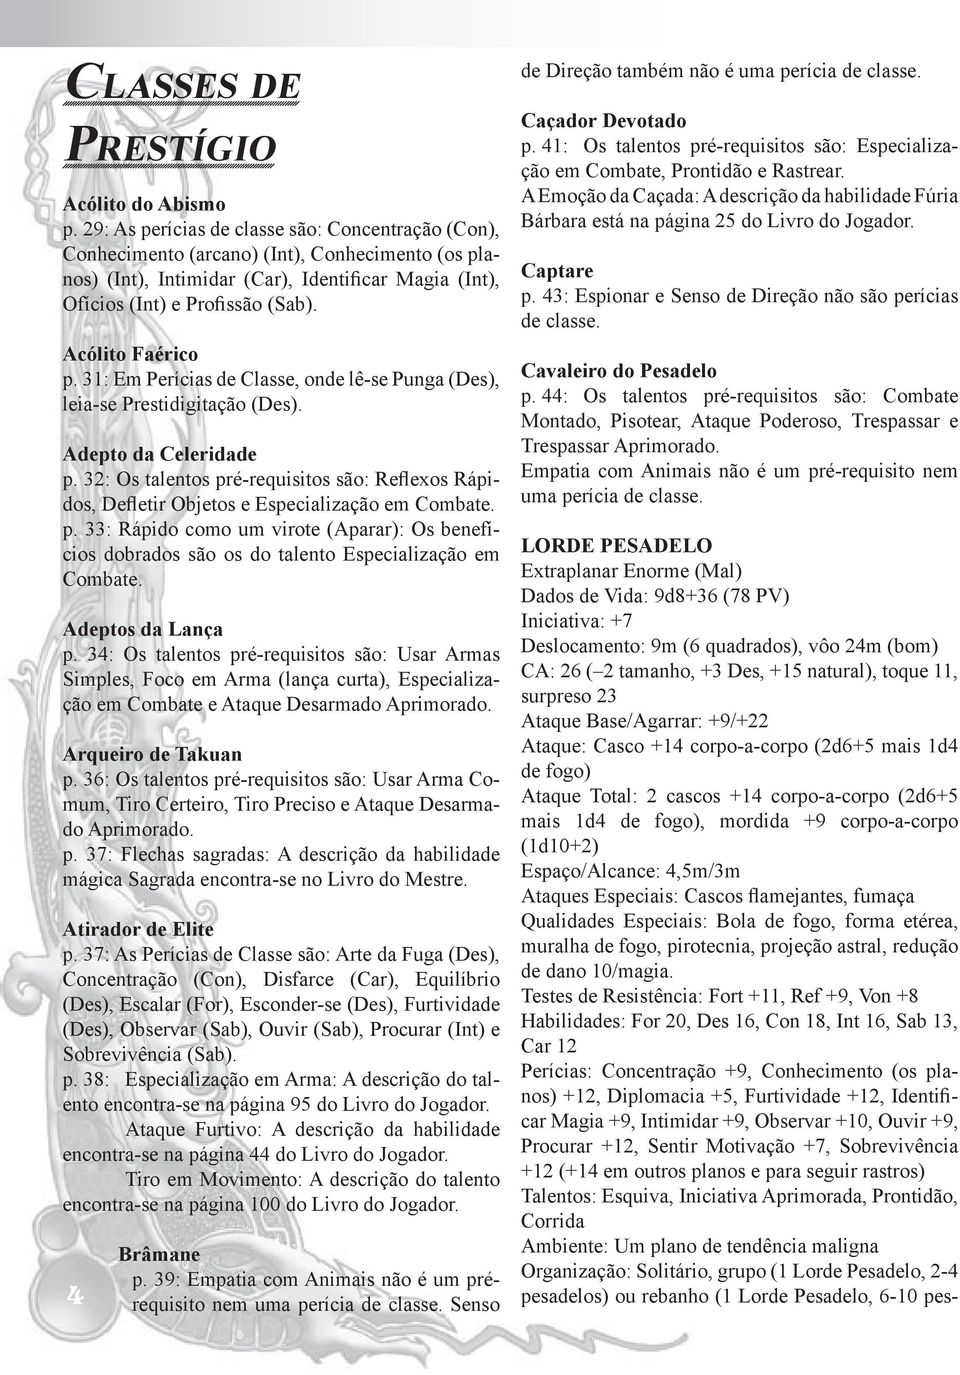 Acólito Faérico p. 31: Em Perícias de Classe, onde lê-se Punga (Des), leia-se Prestidigitação (Des). Adepto da Celeridade p.